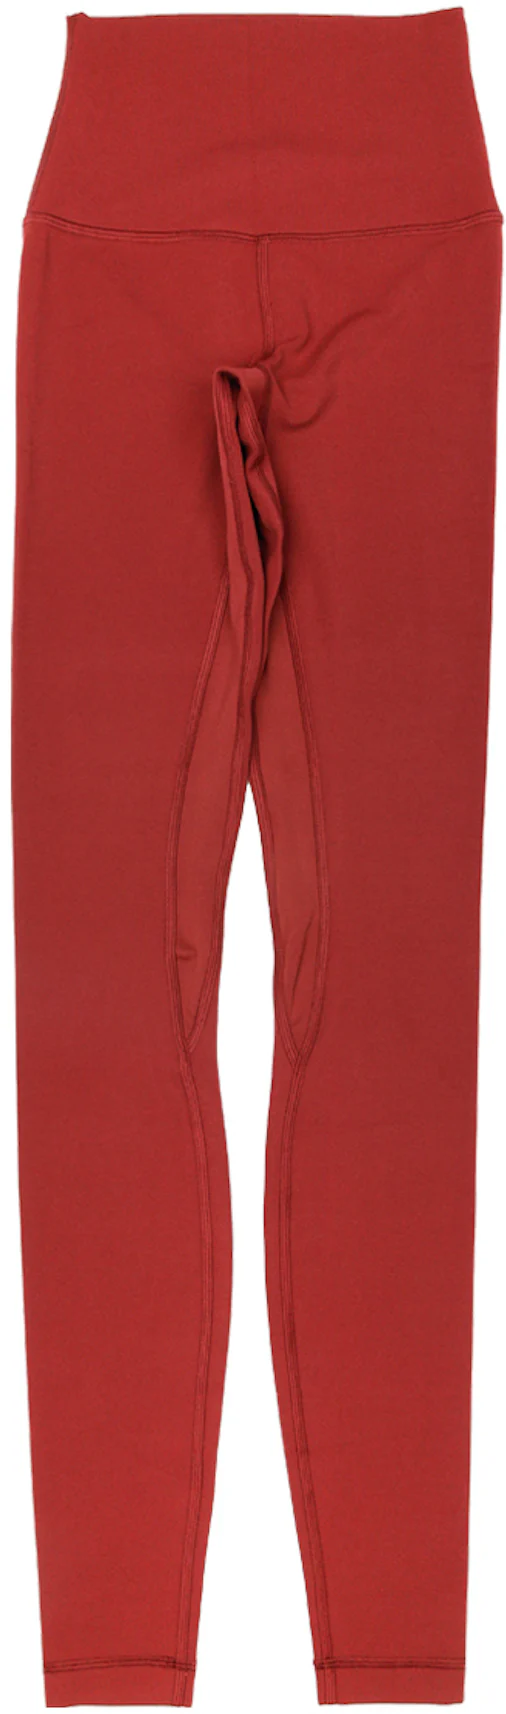 lululemon athletica, Pants & Jumpsuits, Lululemon Leggings Dark Red